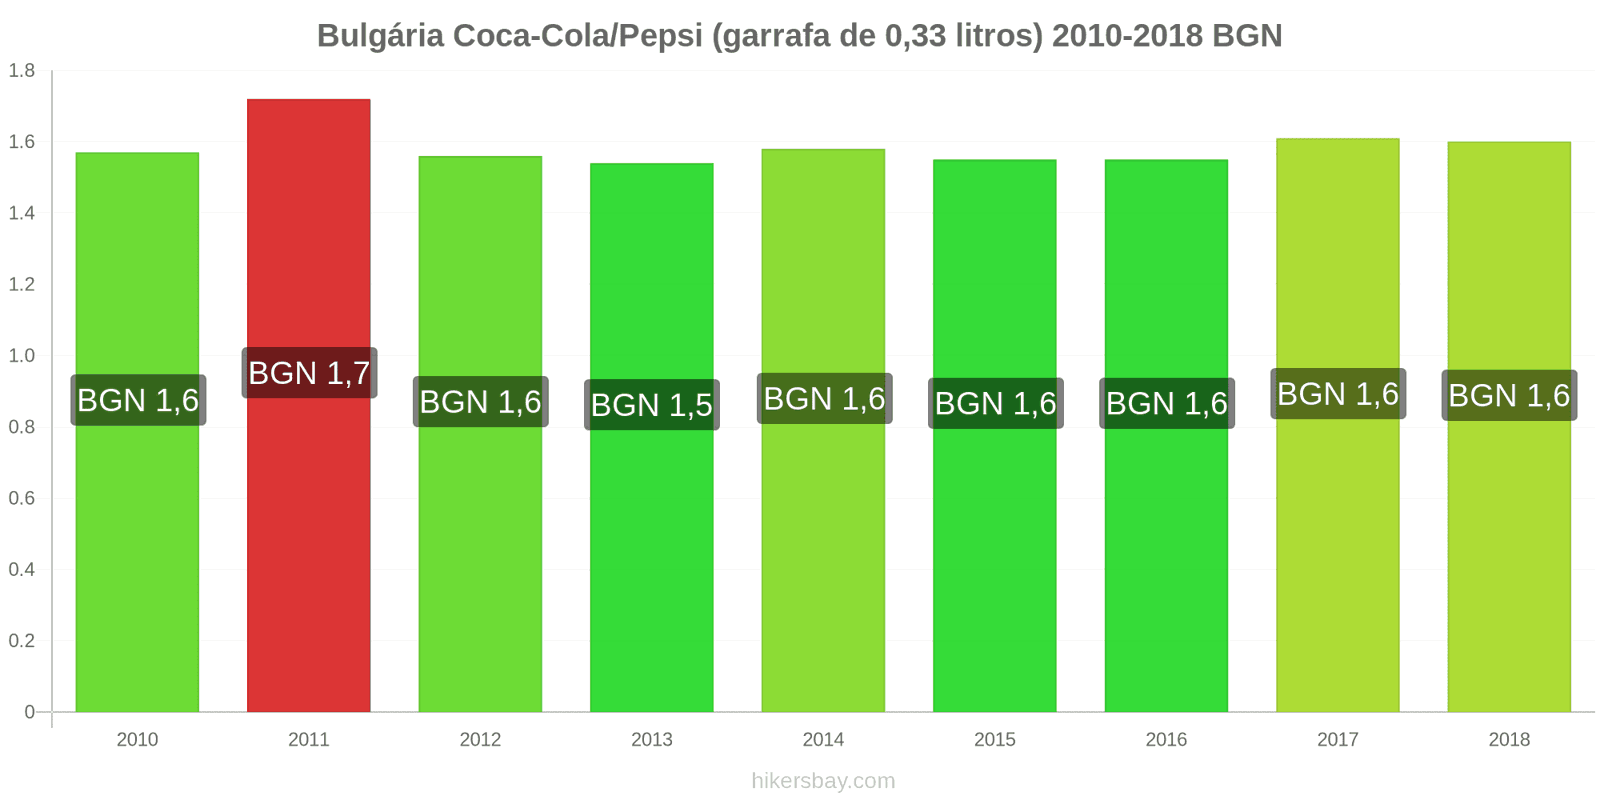 Bulgária mudanças de preços Coca-Cola/Pepsi (garrafa de 0.33 litros) hikersbay.com